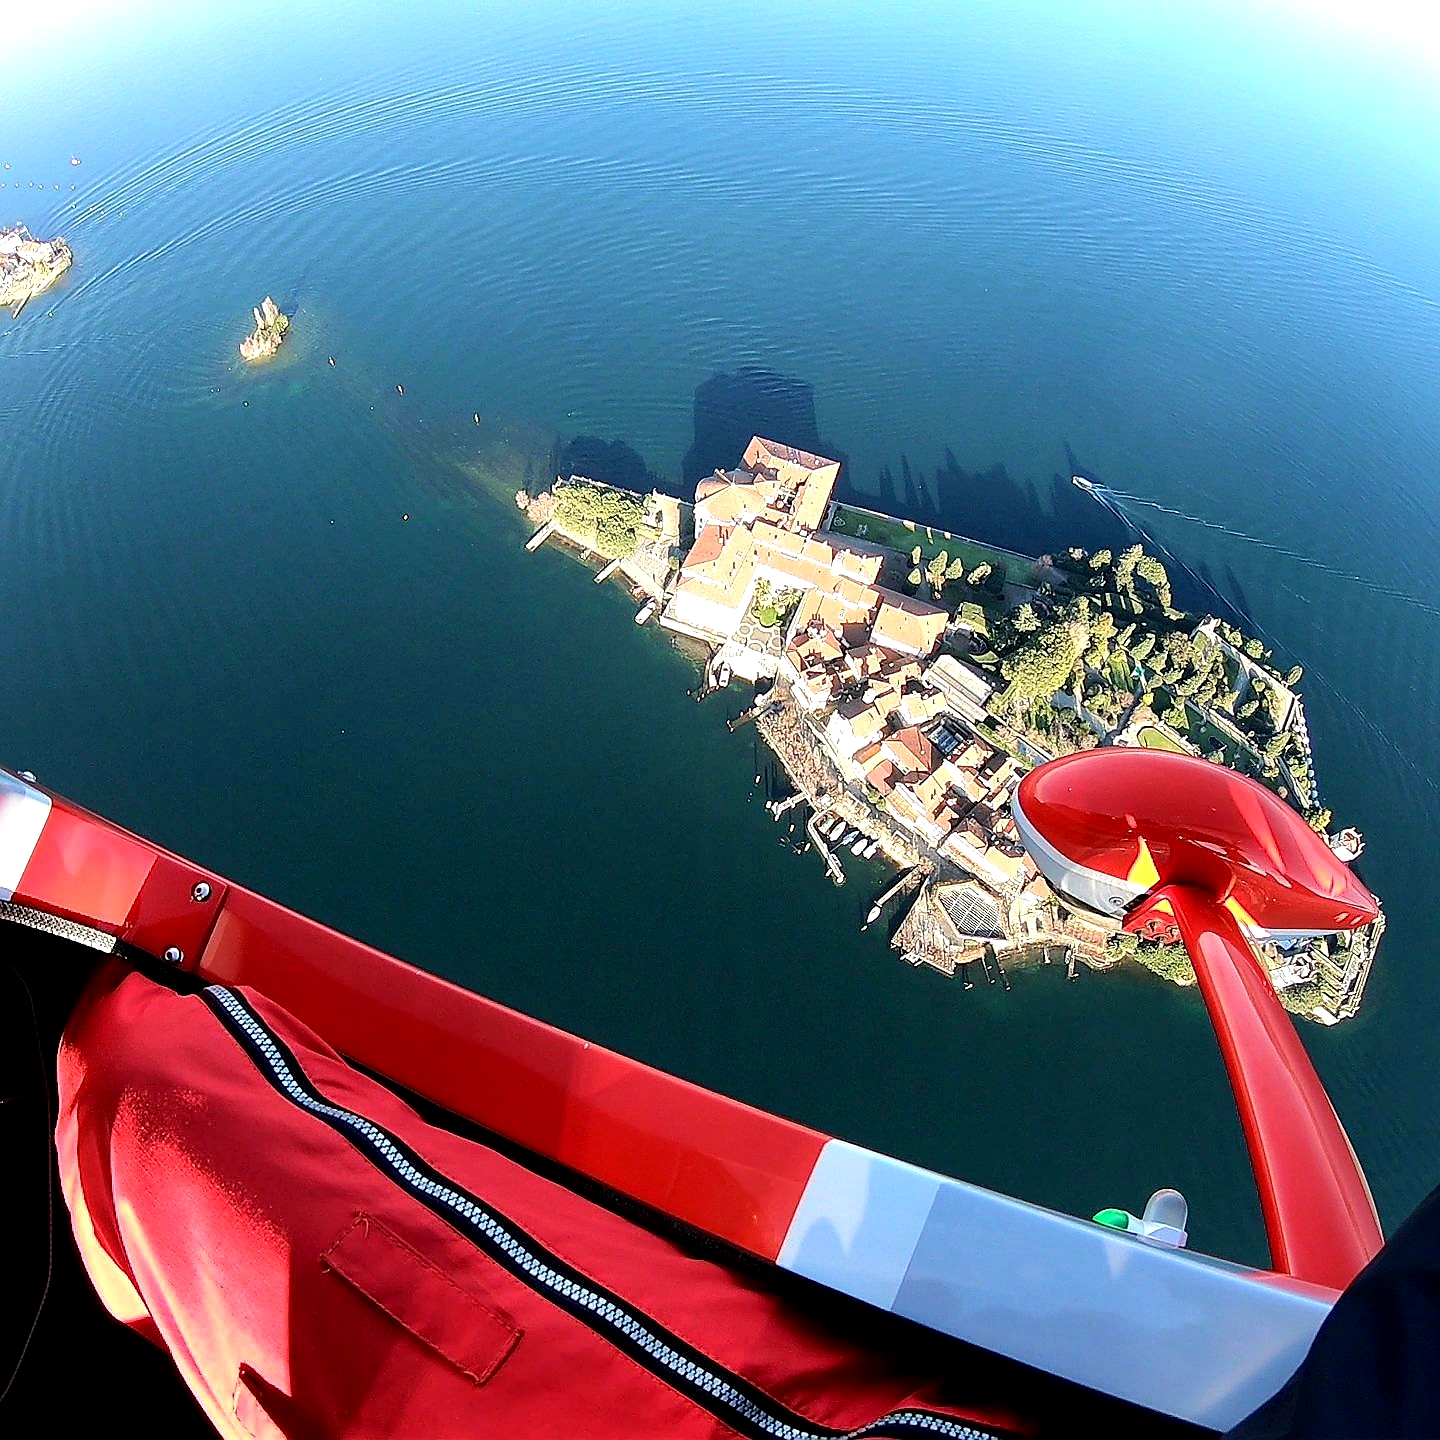 In flight over Lake Maggiore and the Borromeo islands